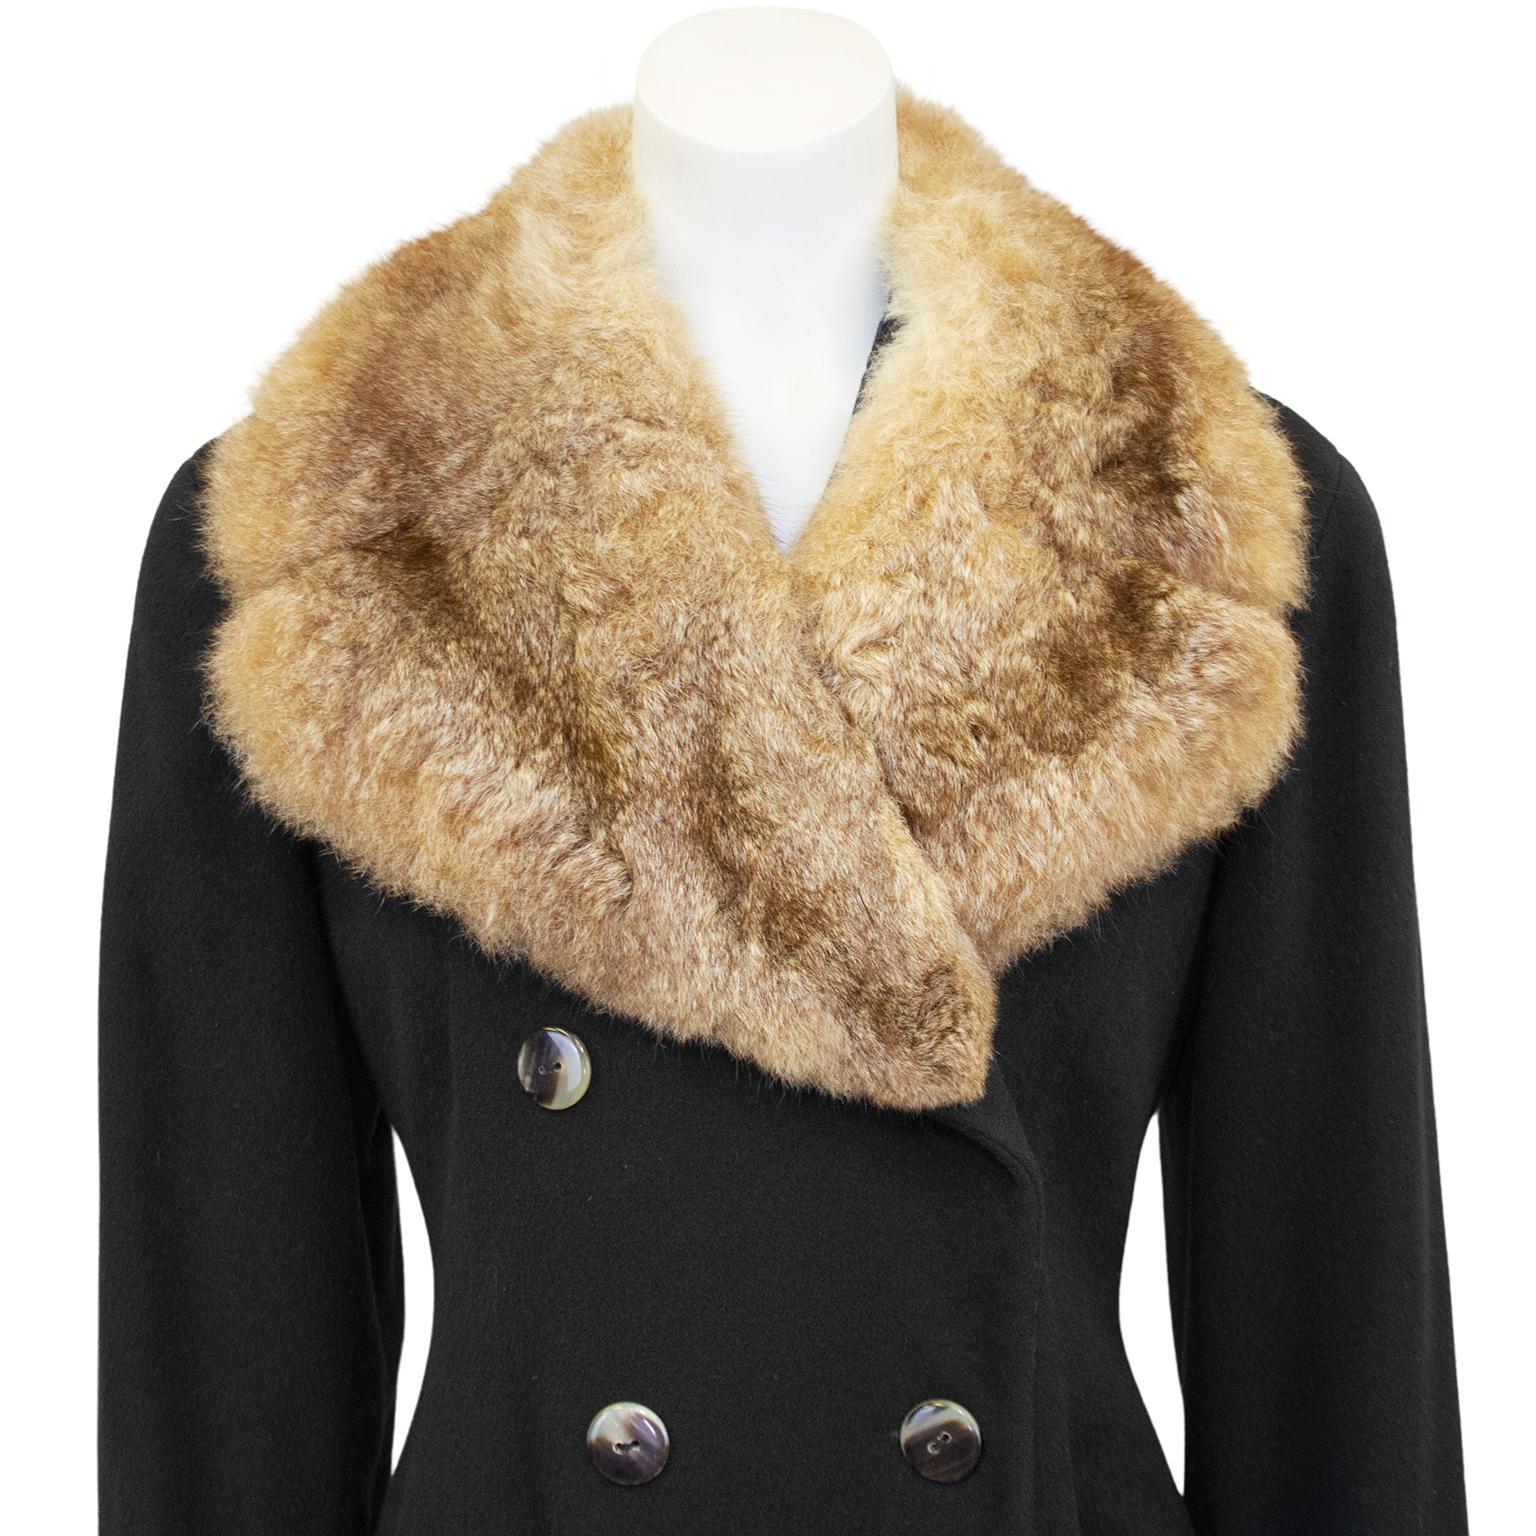 dress coat with fur collar